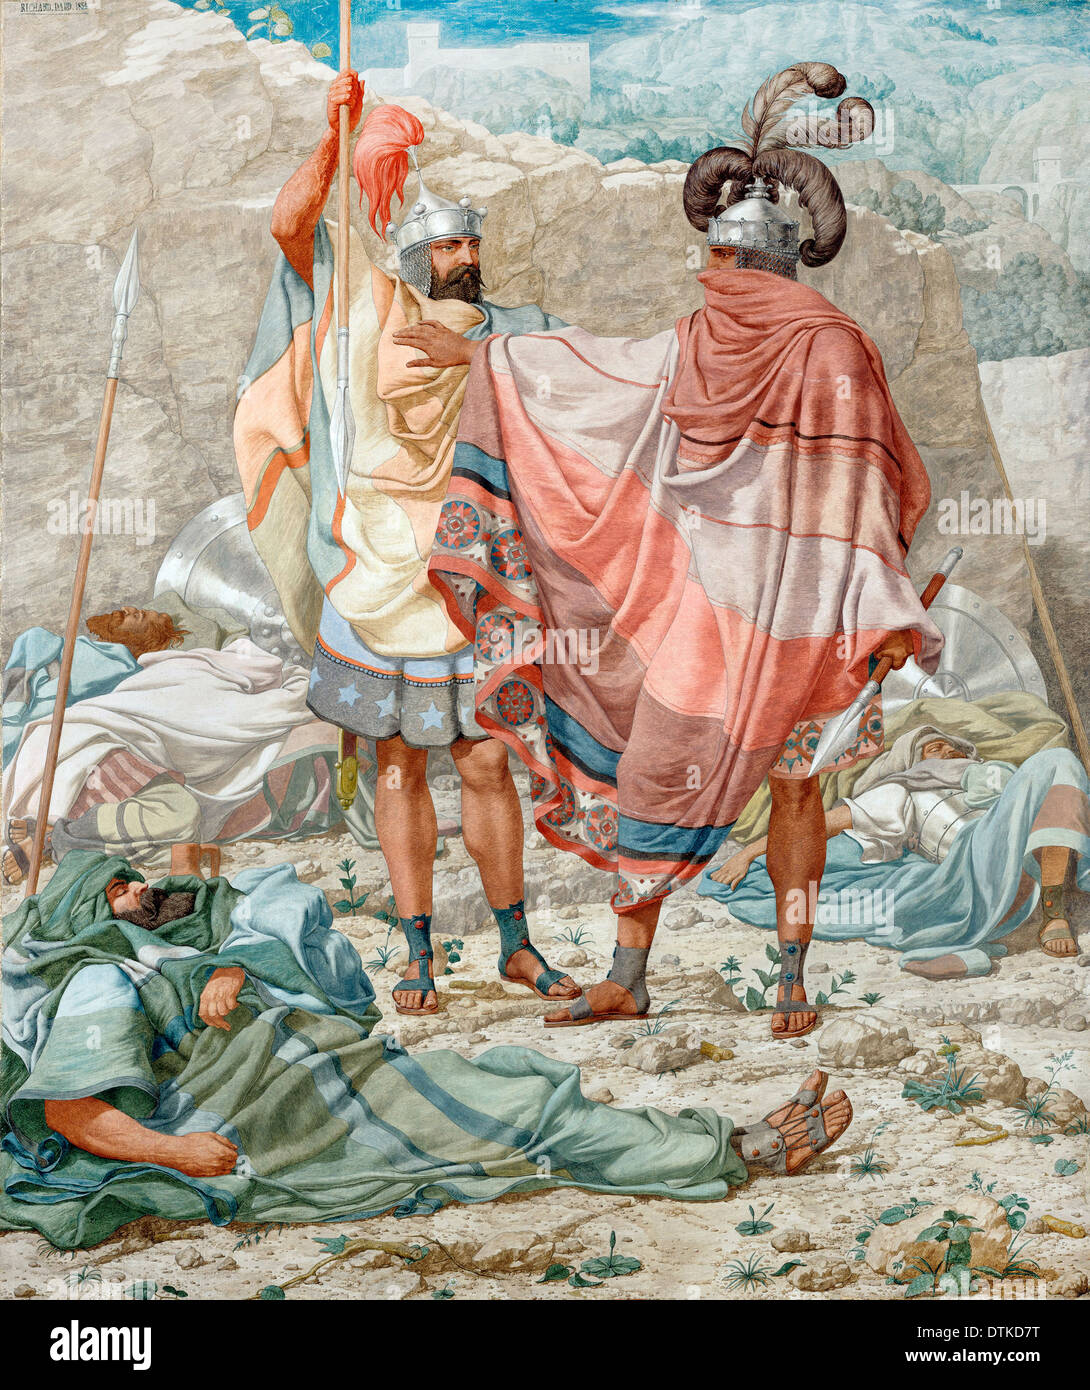 Richard Dadd, Mercy : David retient la vie de Saül, 1854 huile sur toile. Yale Center for British Art, New Haven, USA. Banque D'Images